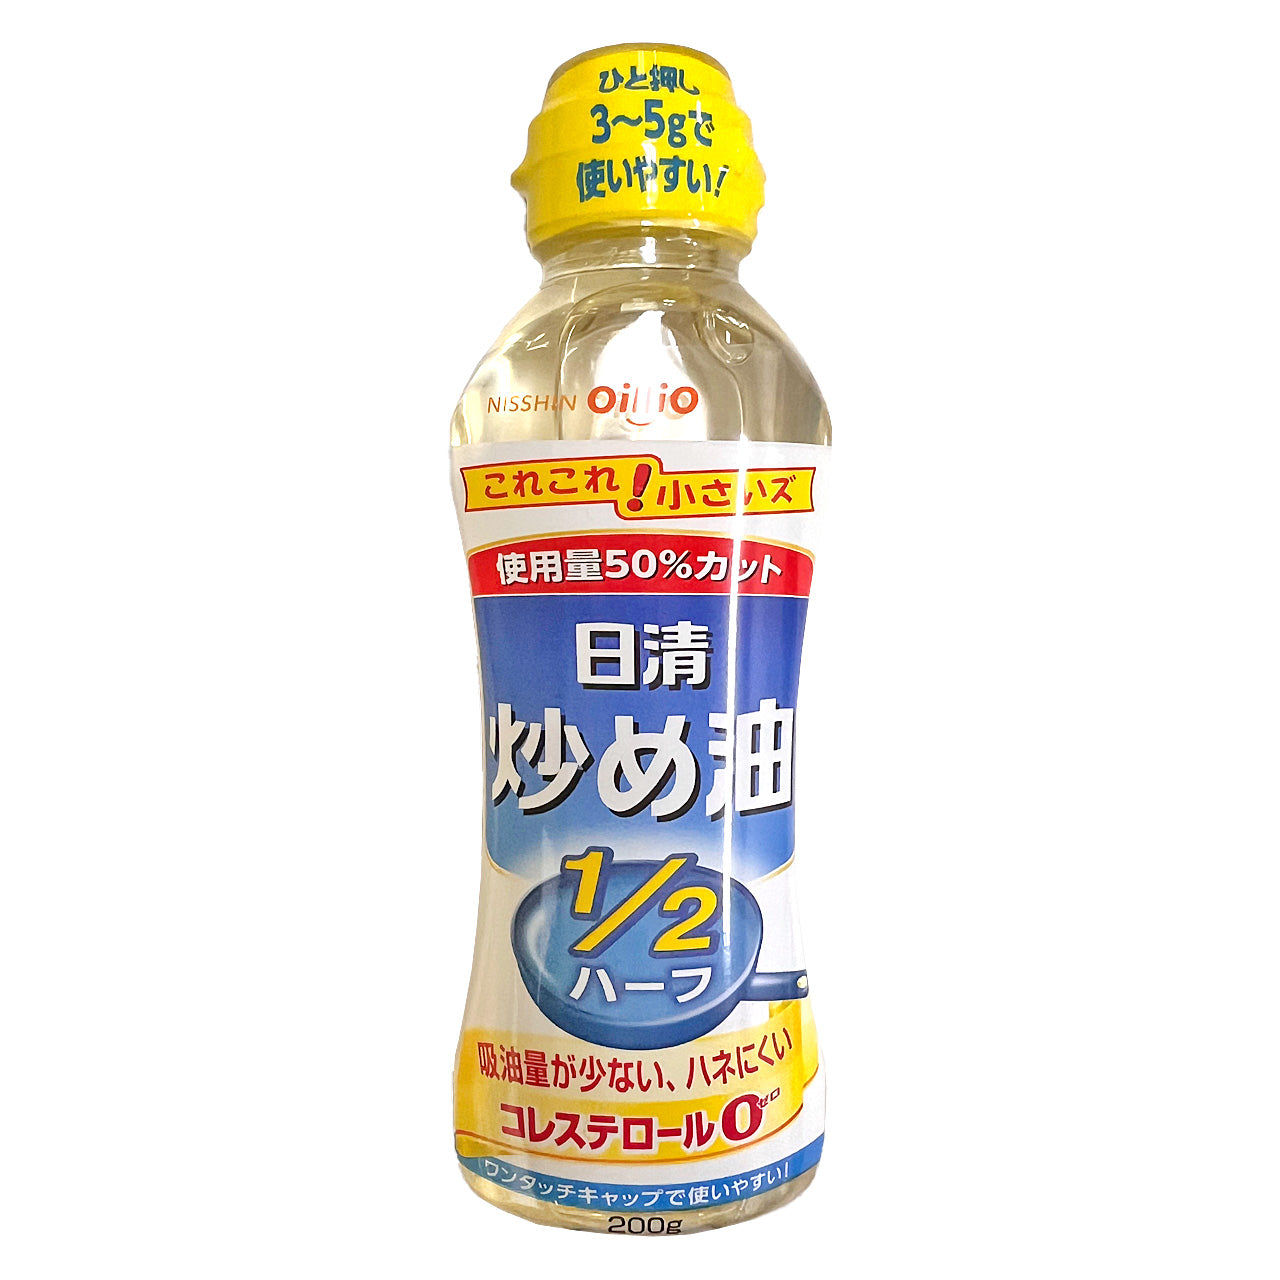 日清オイリオ 油っこくない炒め油 1/2ハーフ 200g – 九州屋plus+